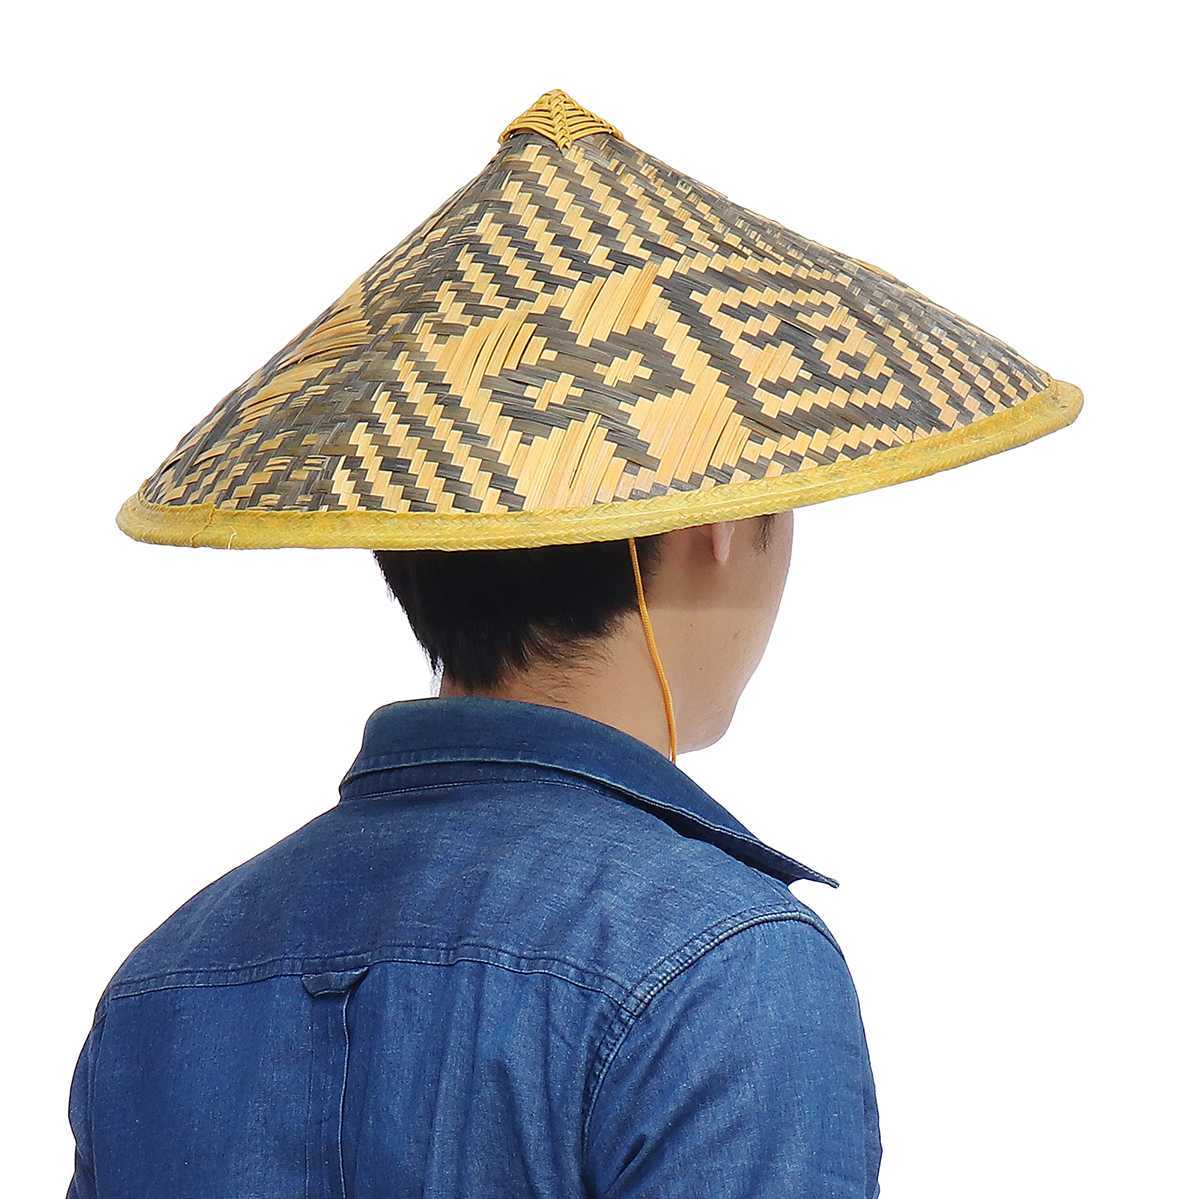 Мужская голова в соломенной шляпе. Японская соломенная шляпа амигаса. Шляпа амигаса Вьетнам. Амигаса головной убор самурая. Китайская соломенная шляпа.